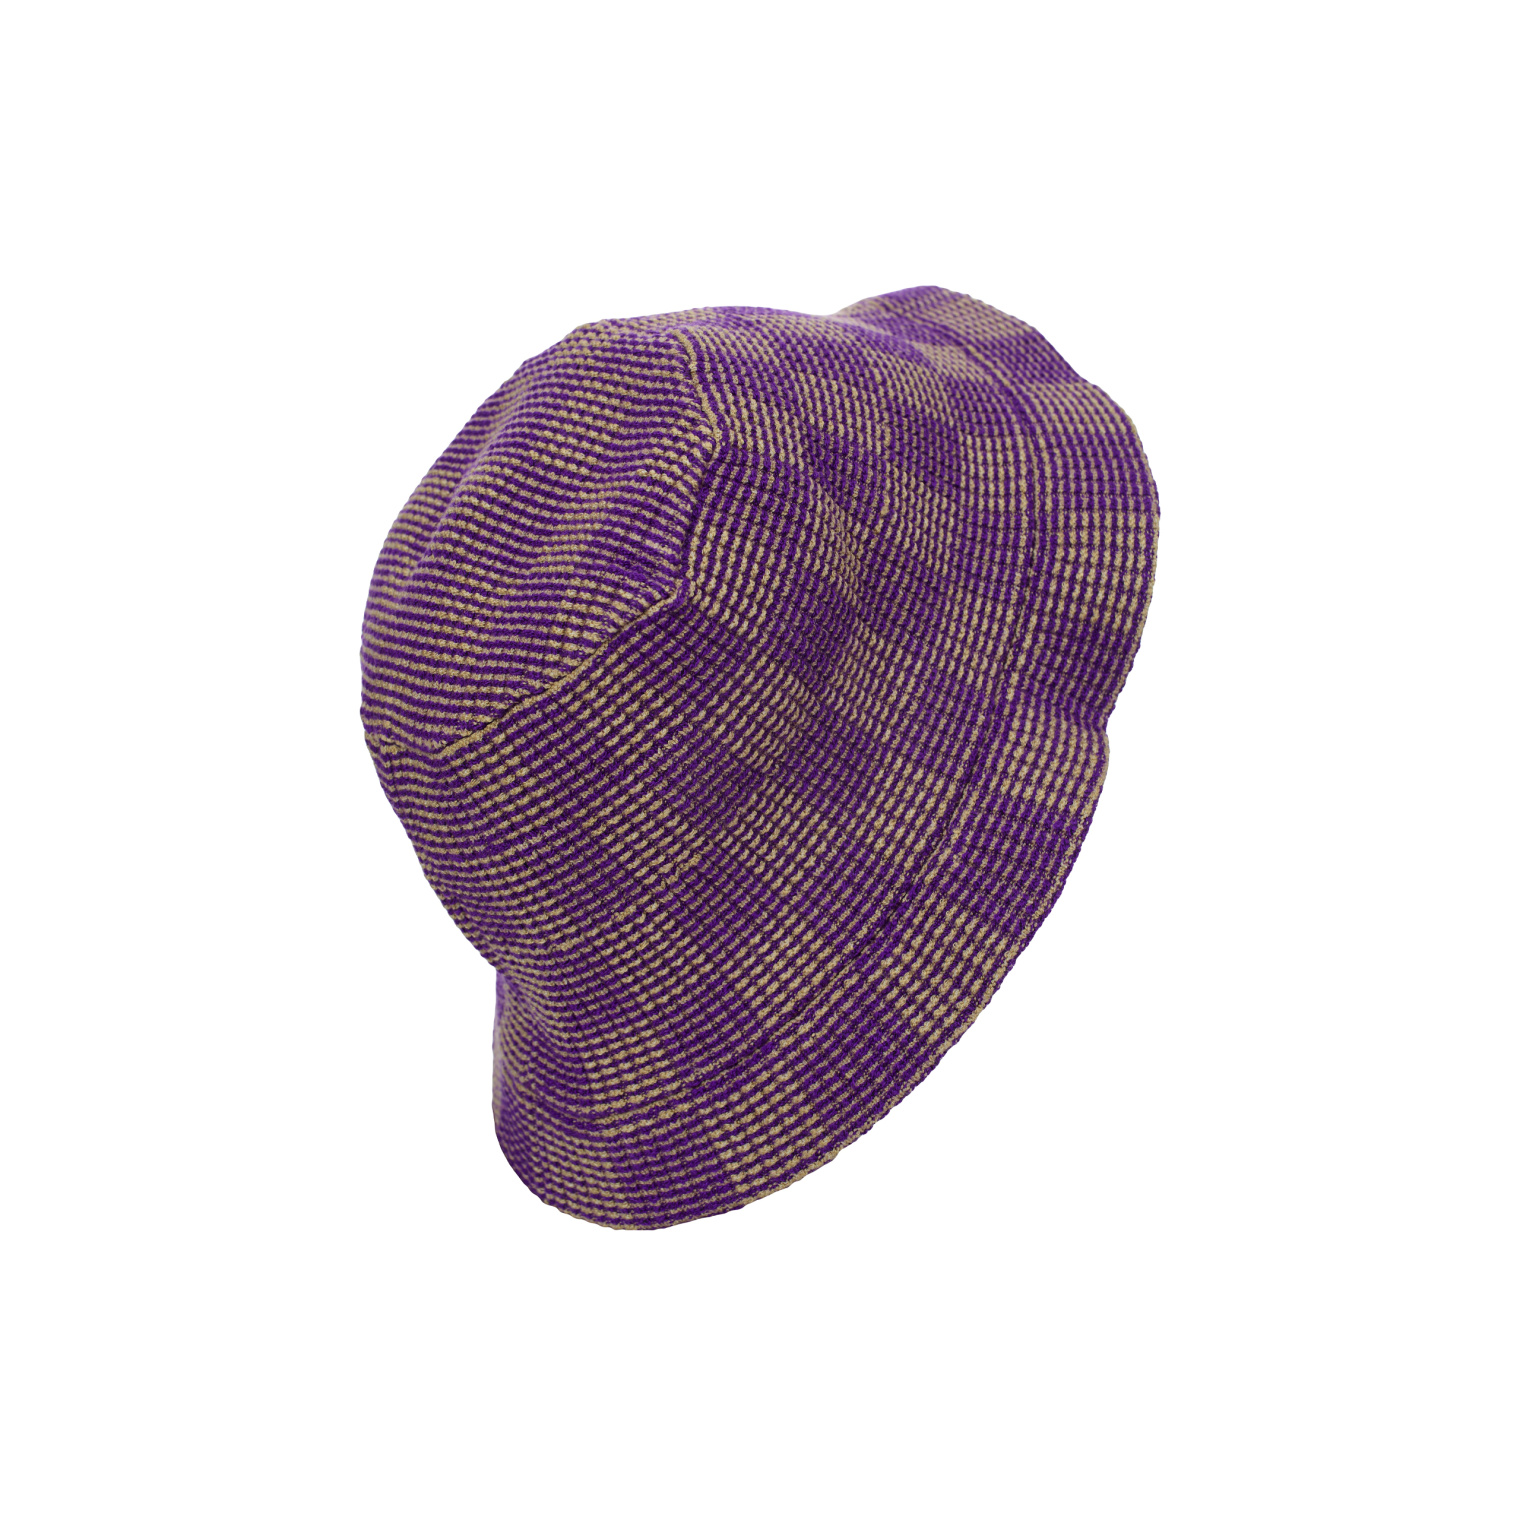 Isa Boulder Knit hat